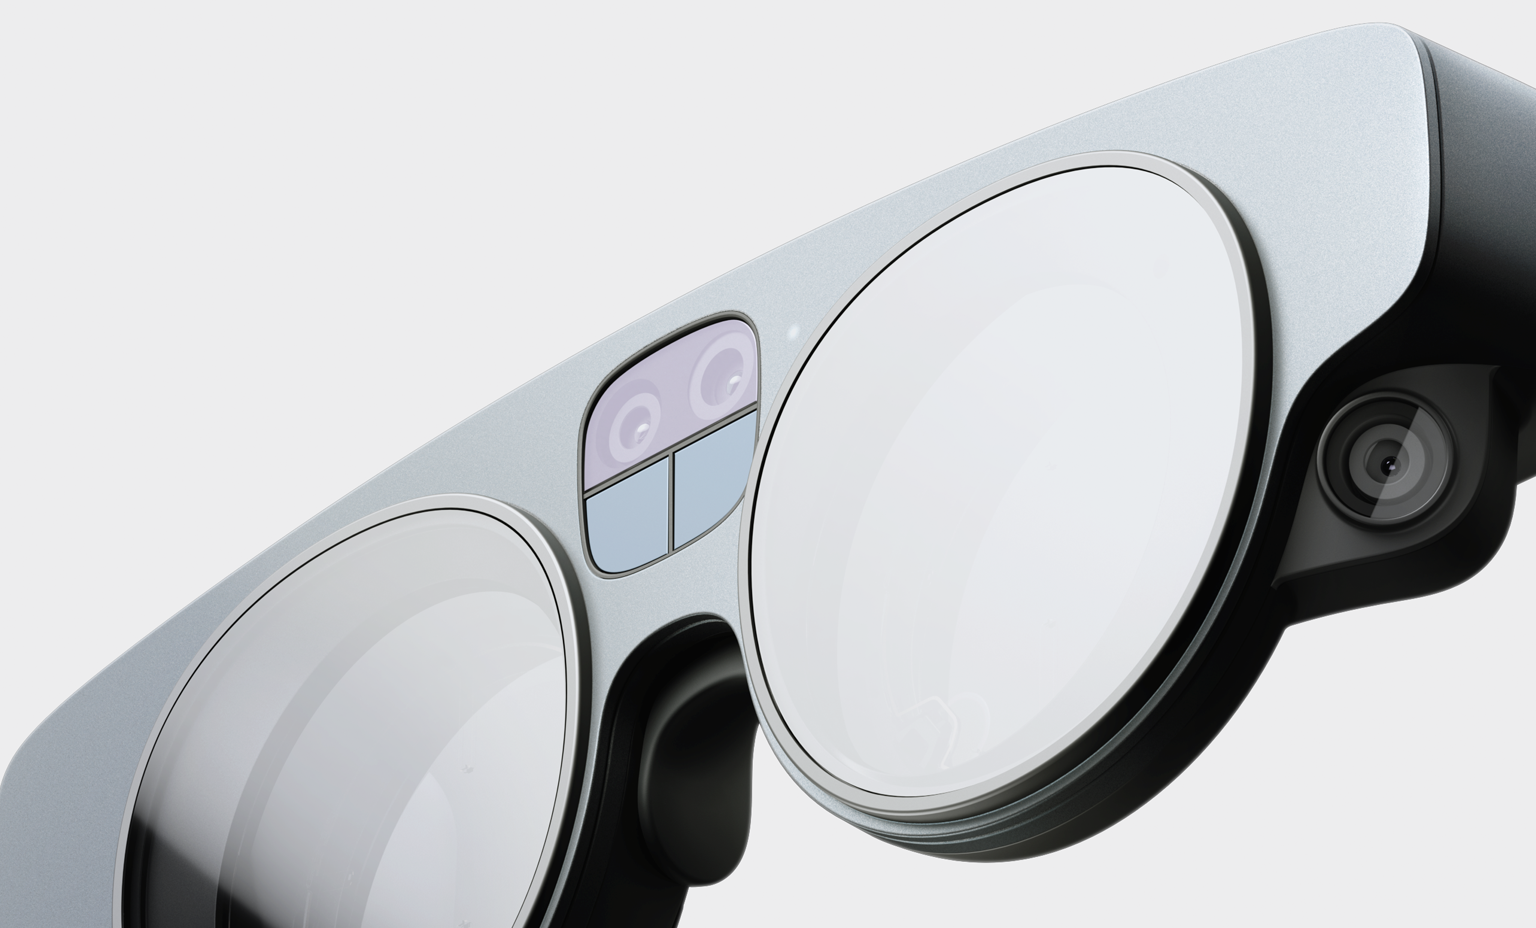 Magic Leap מתכננת להיכנס לשוק משקפי המציאות הרבודה בשנת 2022 עם משקפי מציאות רבודה חדשים.